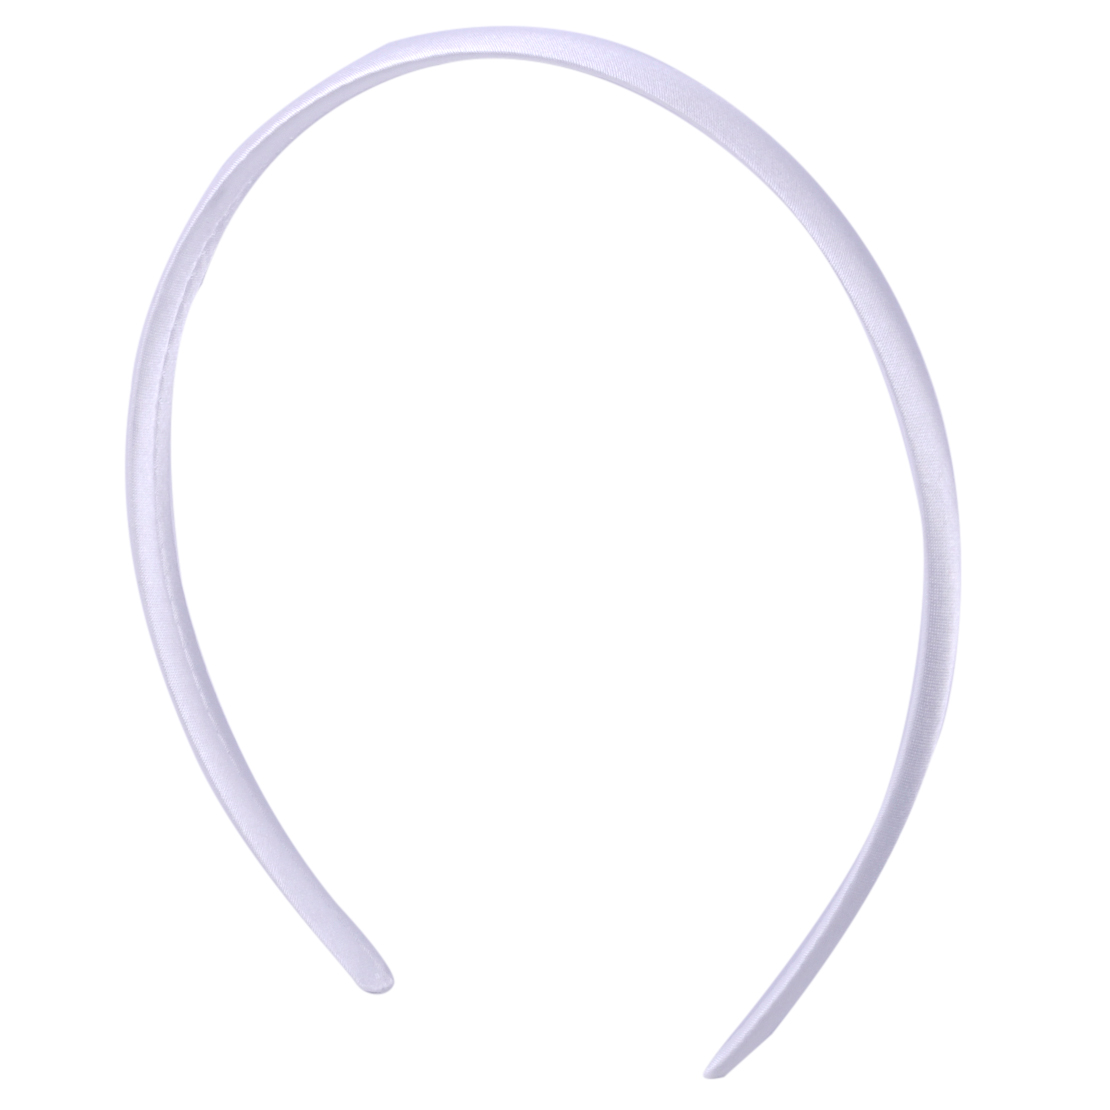 12/Set Plastik Haarreifen Haarband Kopfband Haar Reifen Weiß 10mm Haar praktisch 